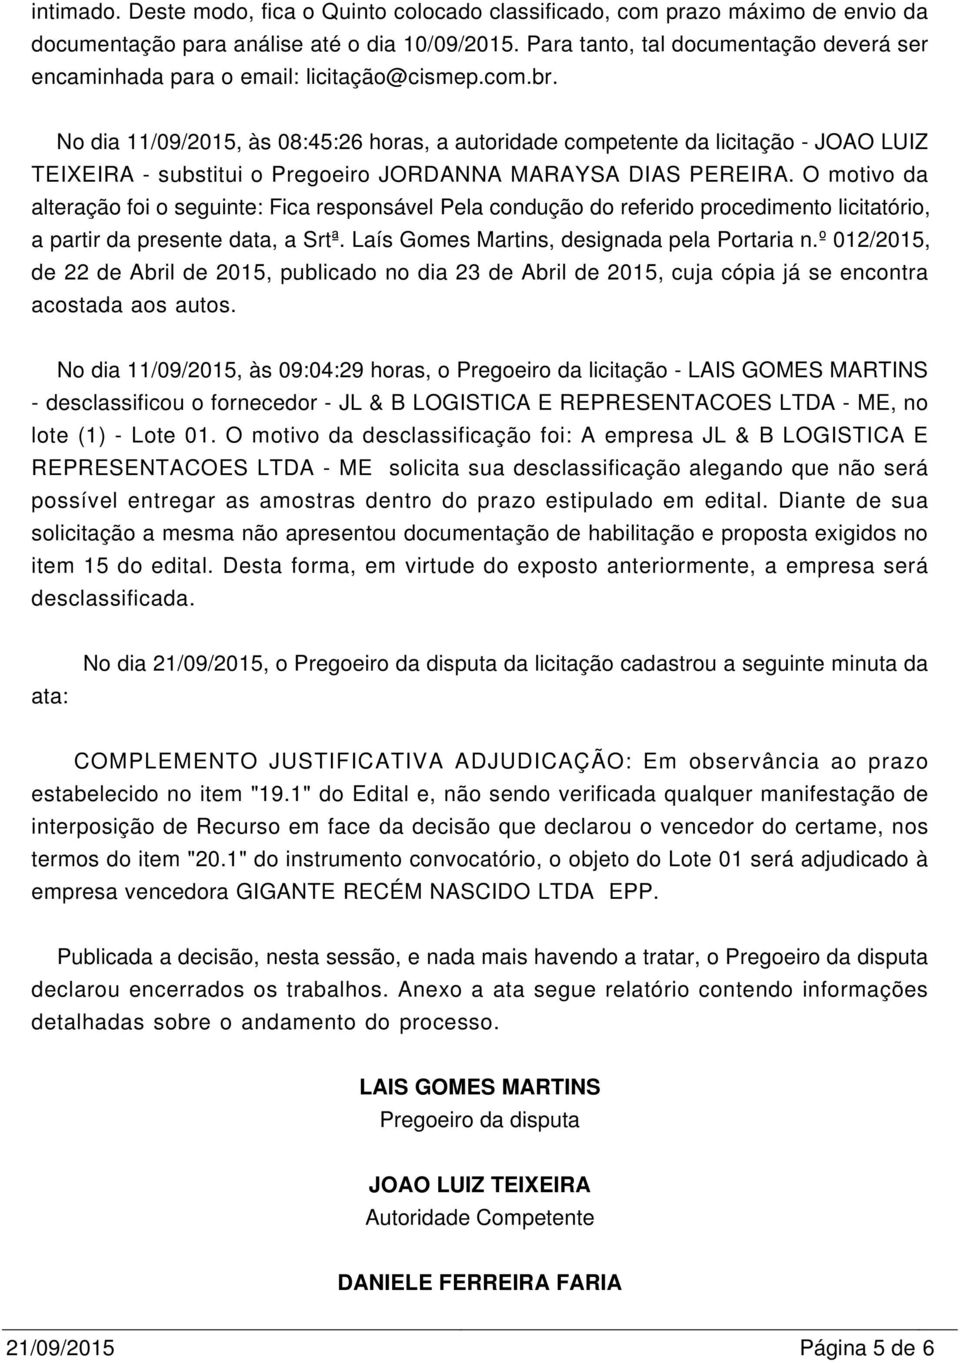 No dia 11/09/2015, às 08:45:26 horas, a autoridade competente da licitação - JOAO LUIZ TEIXEIRA - substitui o Pregoeiro JORDANNA MARAYSA DIAS PEREIRA.